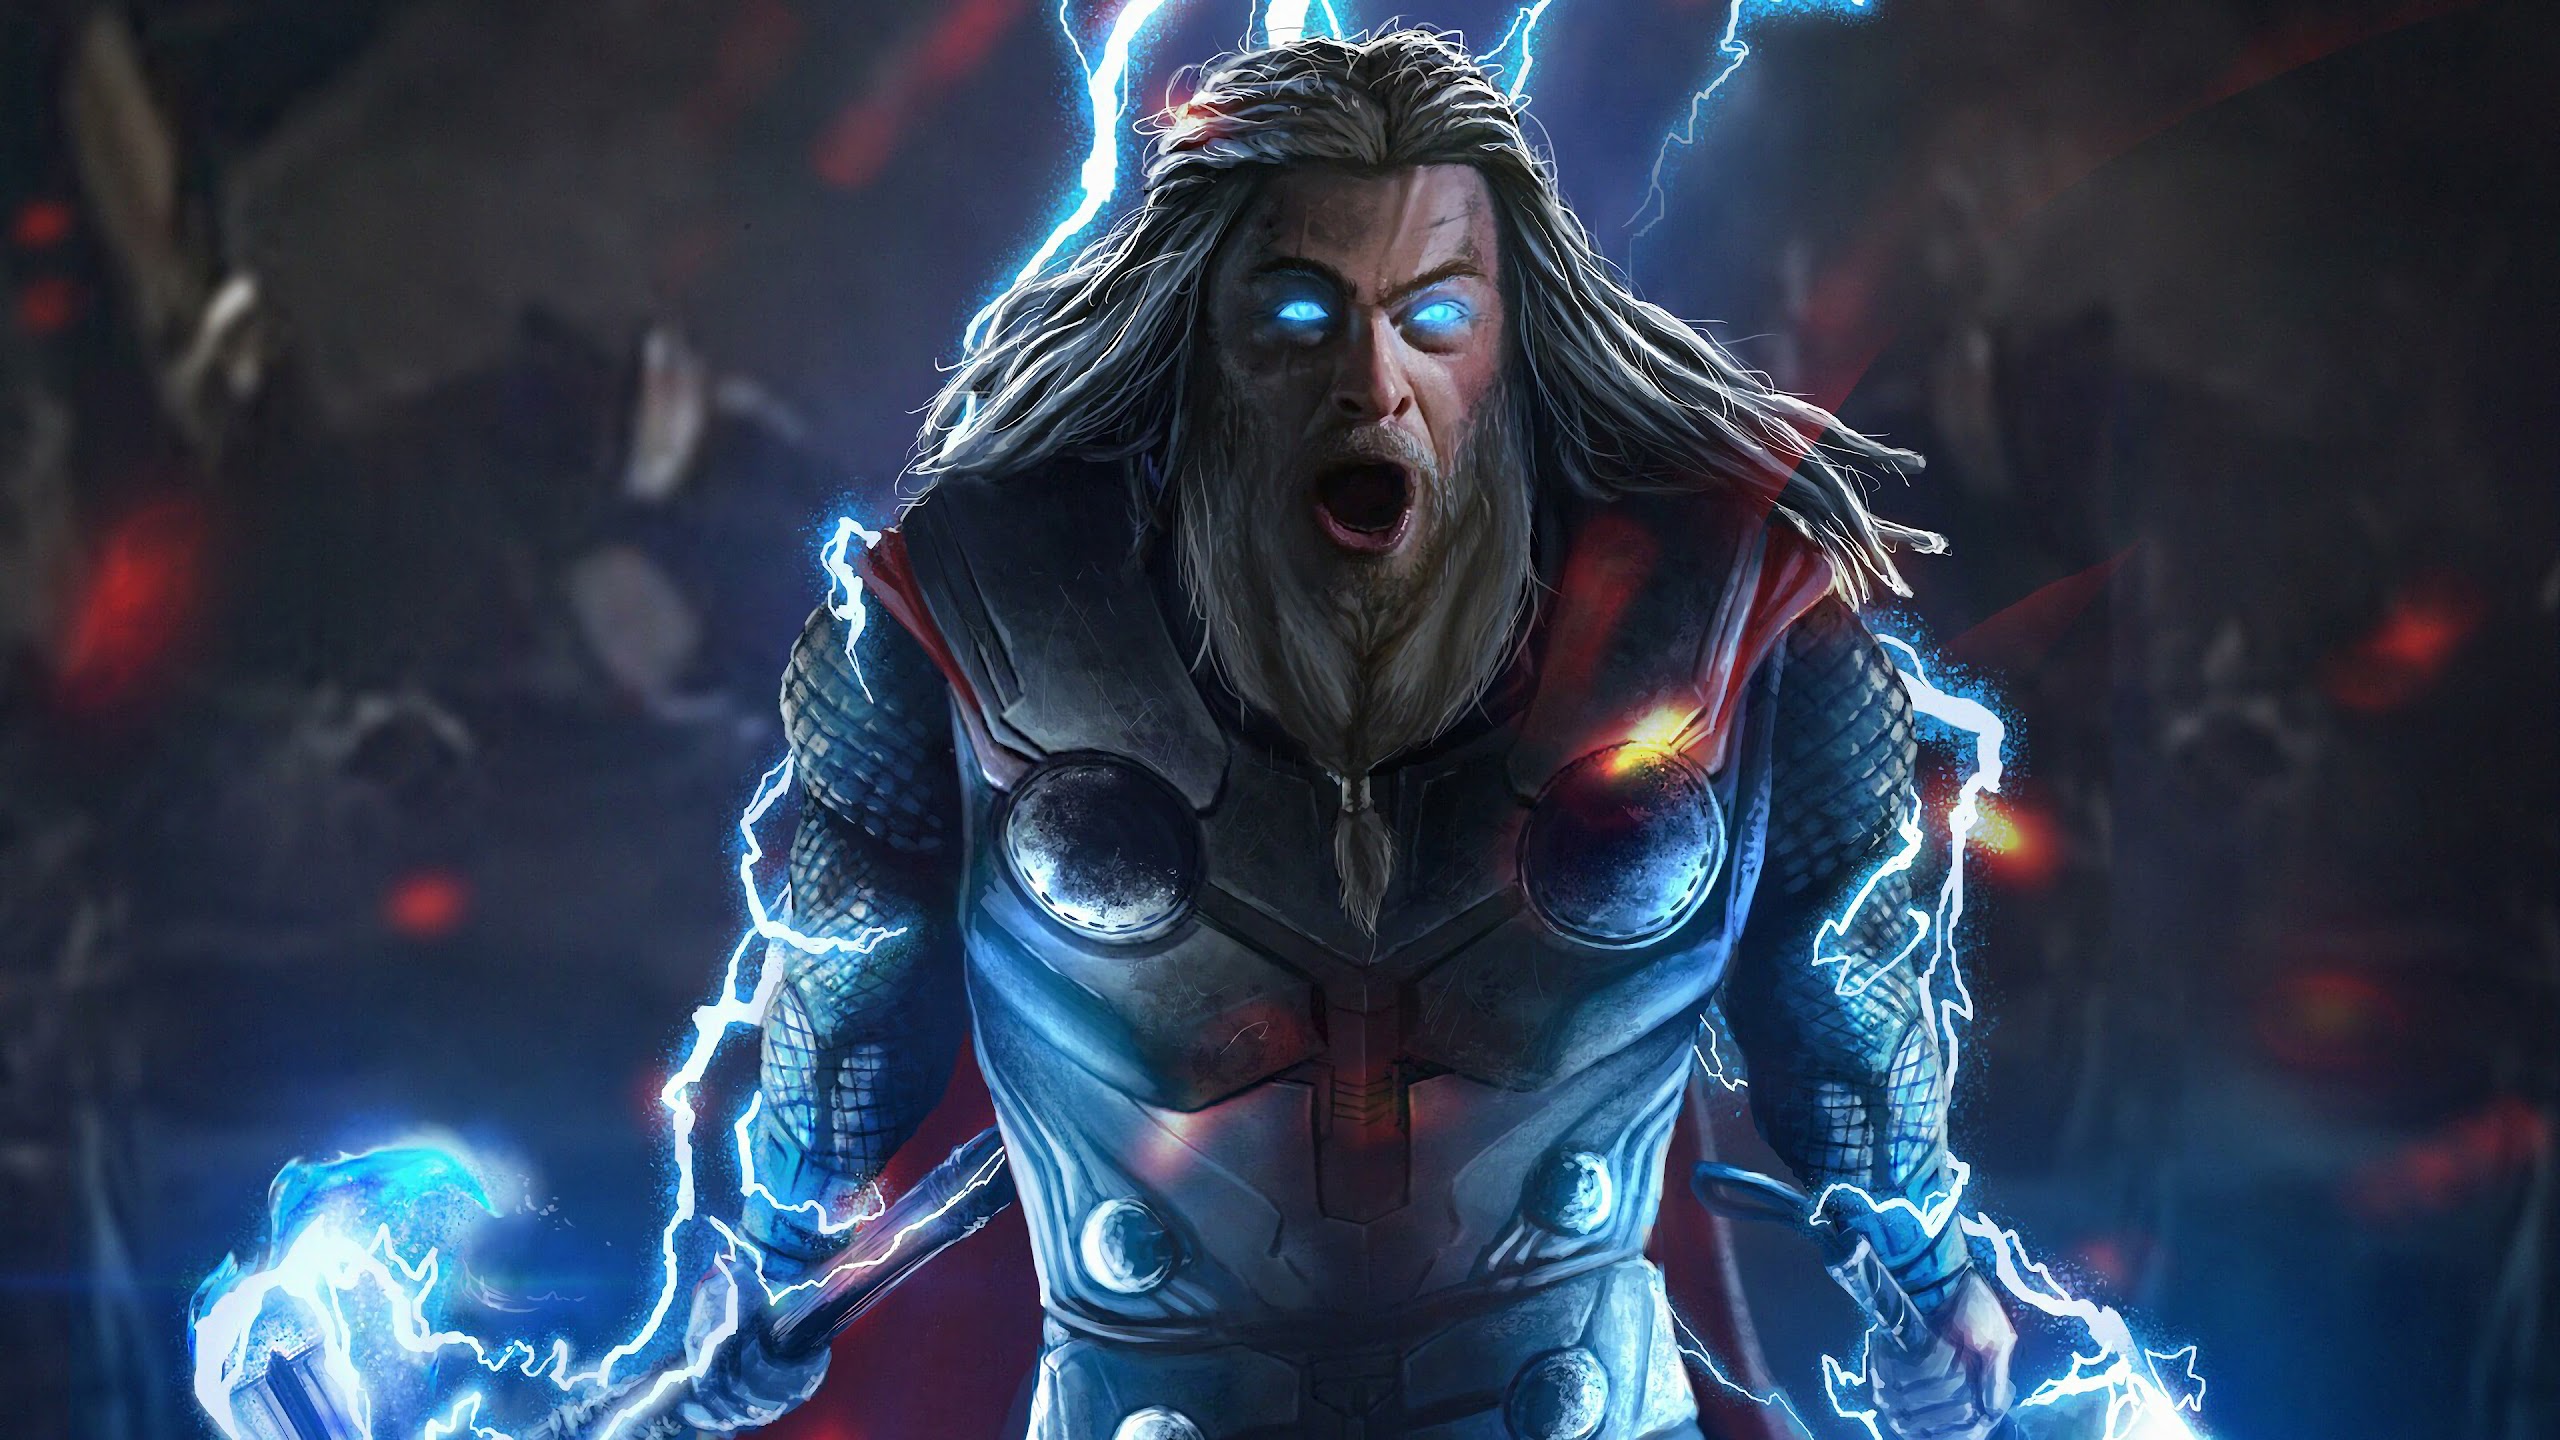 Thor, Lightning, Avengers Endgame, 4K, #179 Wallpaper